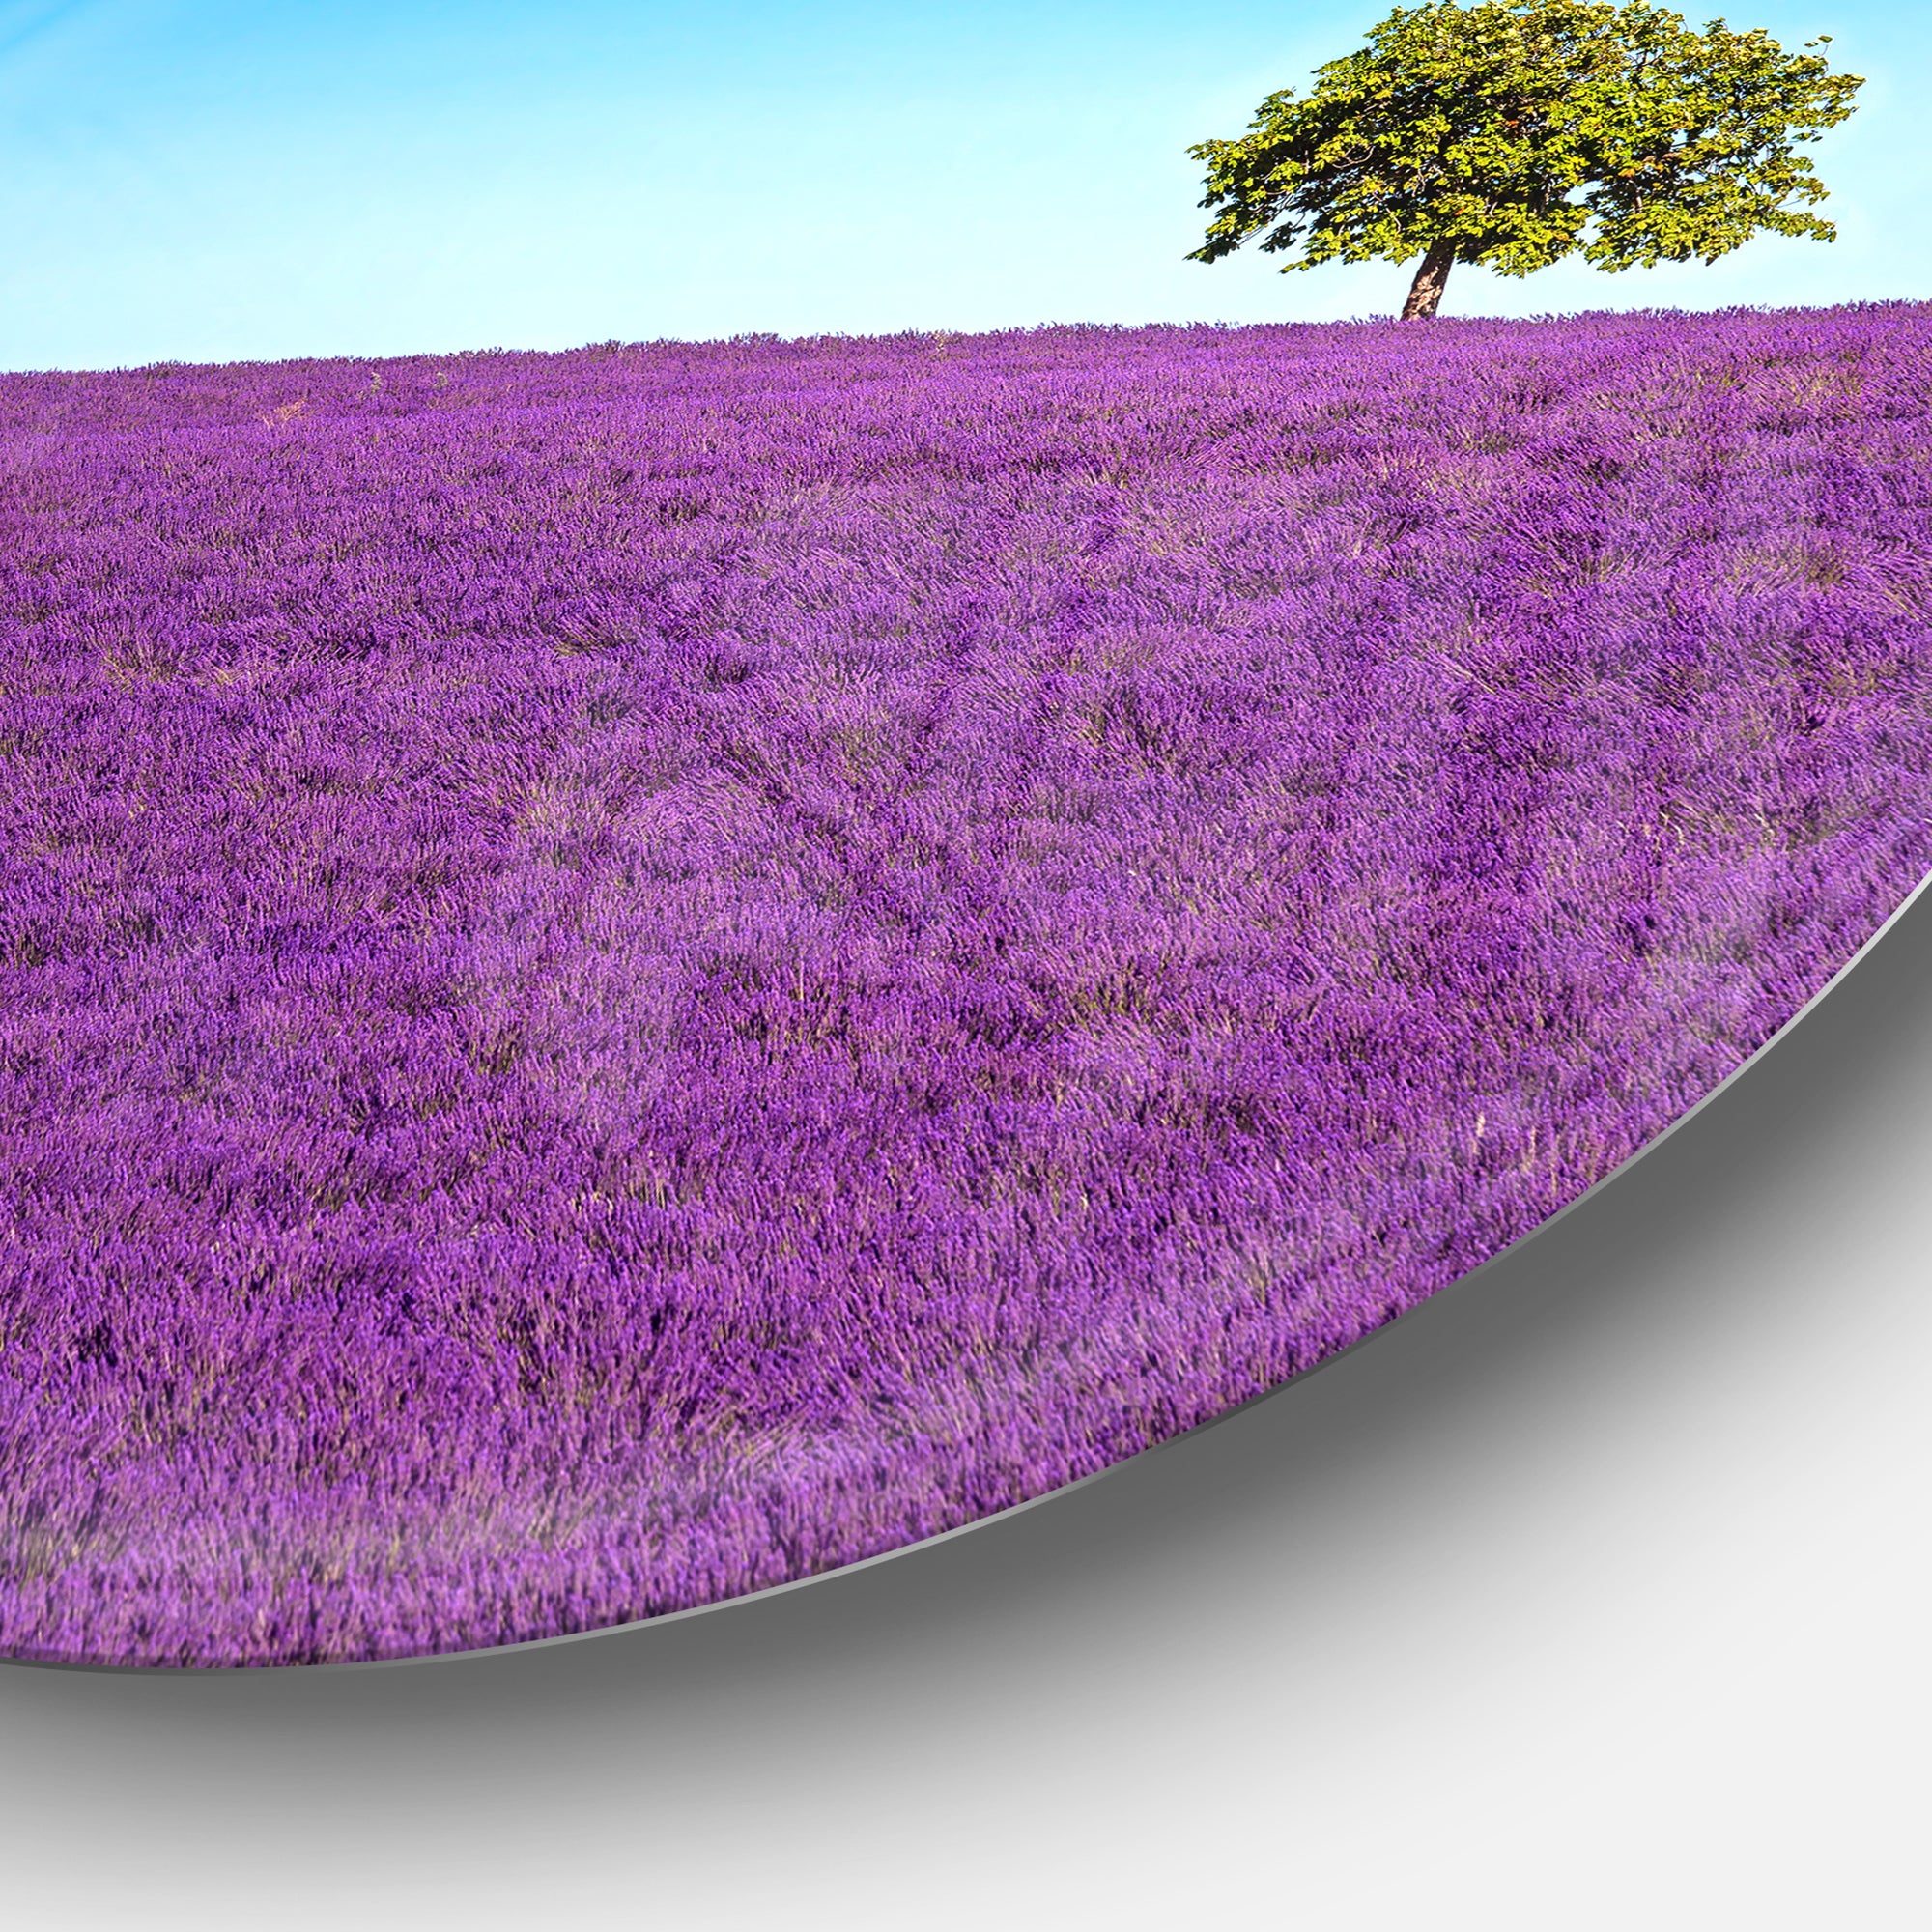 Lonely Tree in Lavender Field' Oversized Landscape Wall Art Print